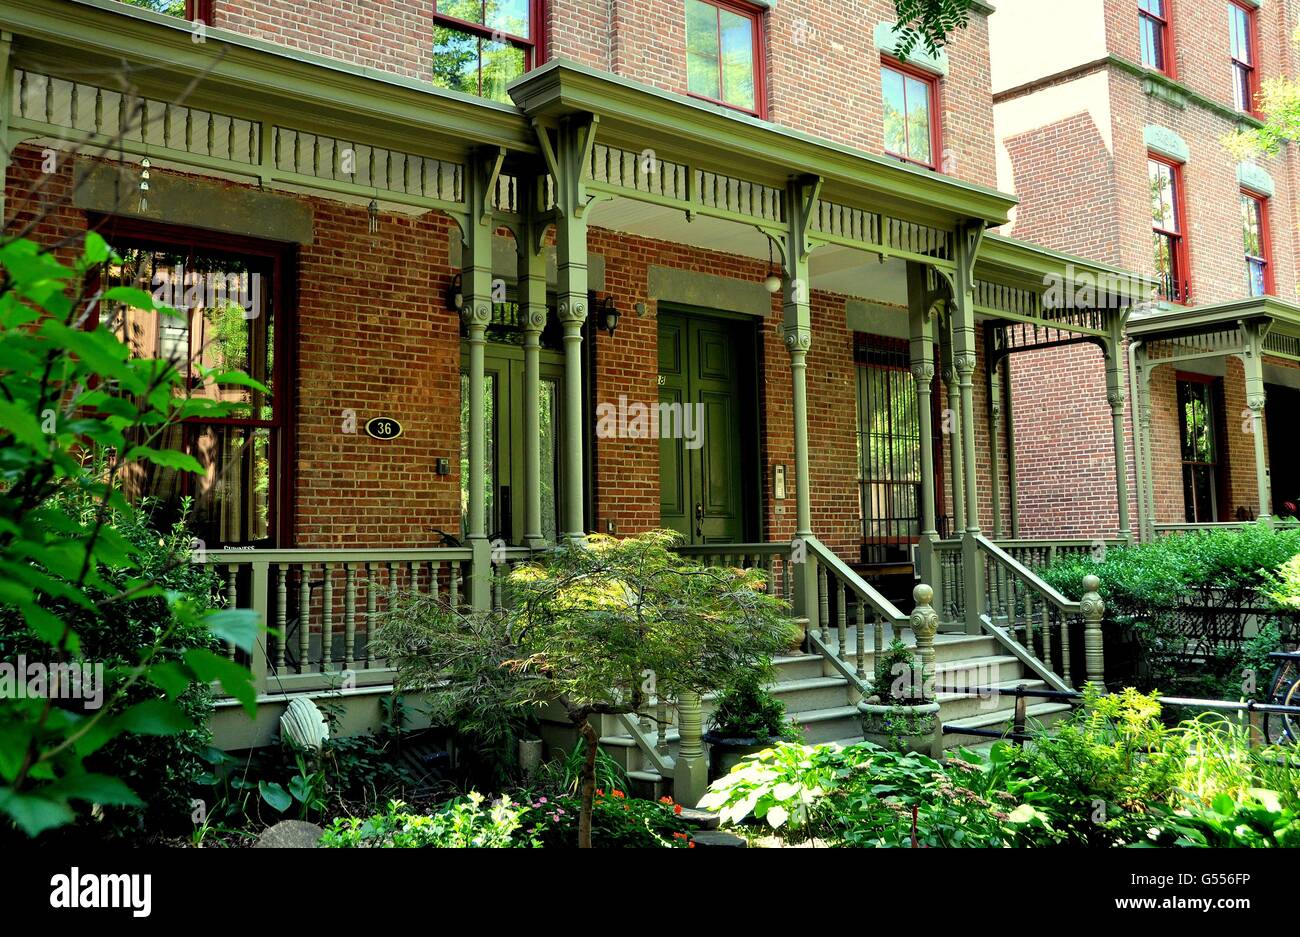 La ville de New York : vers 1900 Astor Row row brique maisons aux porches en bois victorien sur West 130e Rue à Harlem Banque D'Images